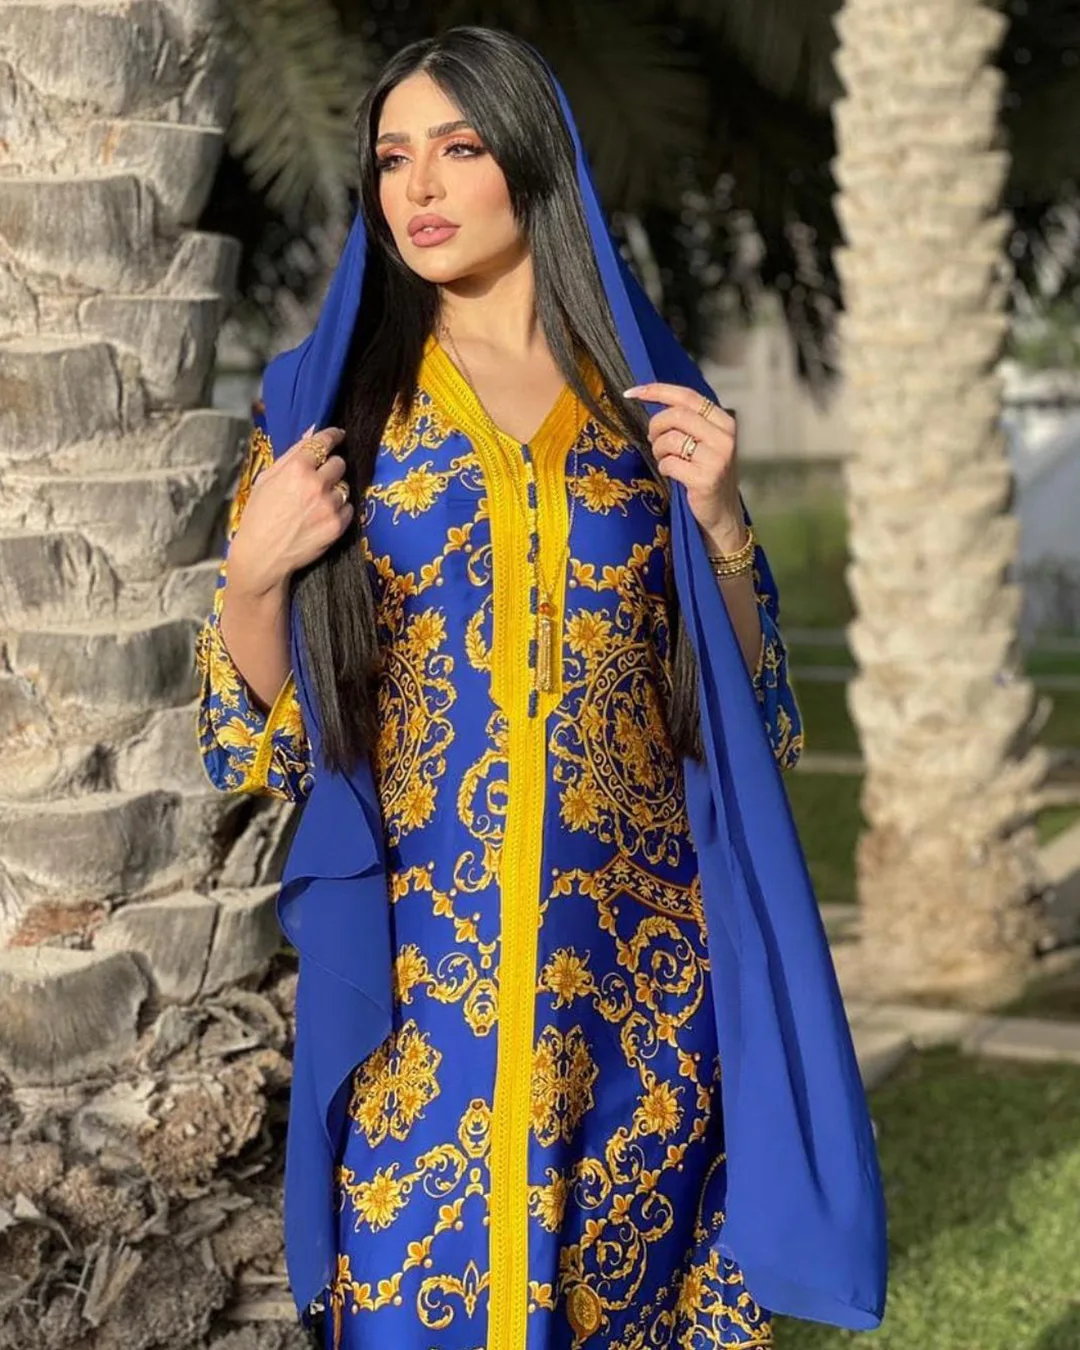 Мусульманское платье с винтажным принтом из Дубая, арабский стиль, марокканский кафтан абайя, Ближний Восток, Турция, ислам, Оман, синий Кафт...